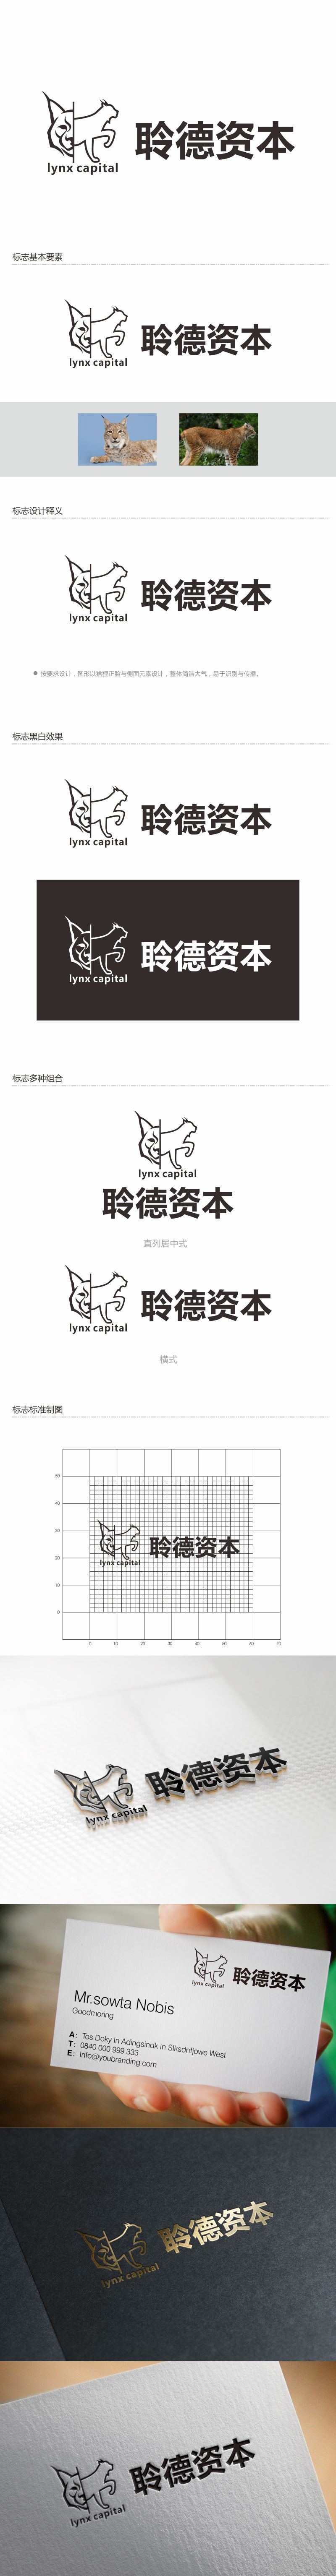 何嘉健的聆德资本（lynx capital）logo设计